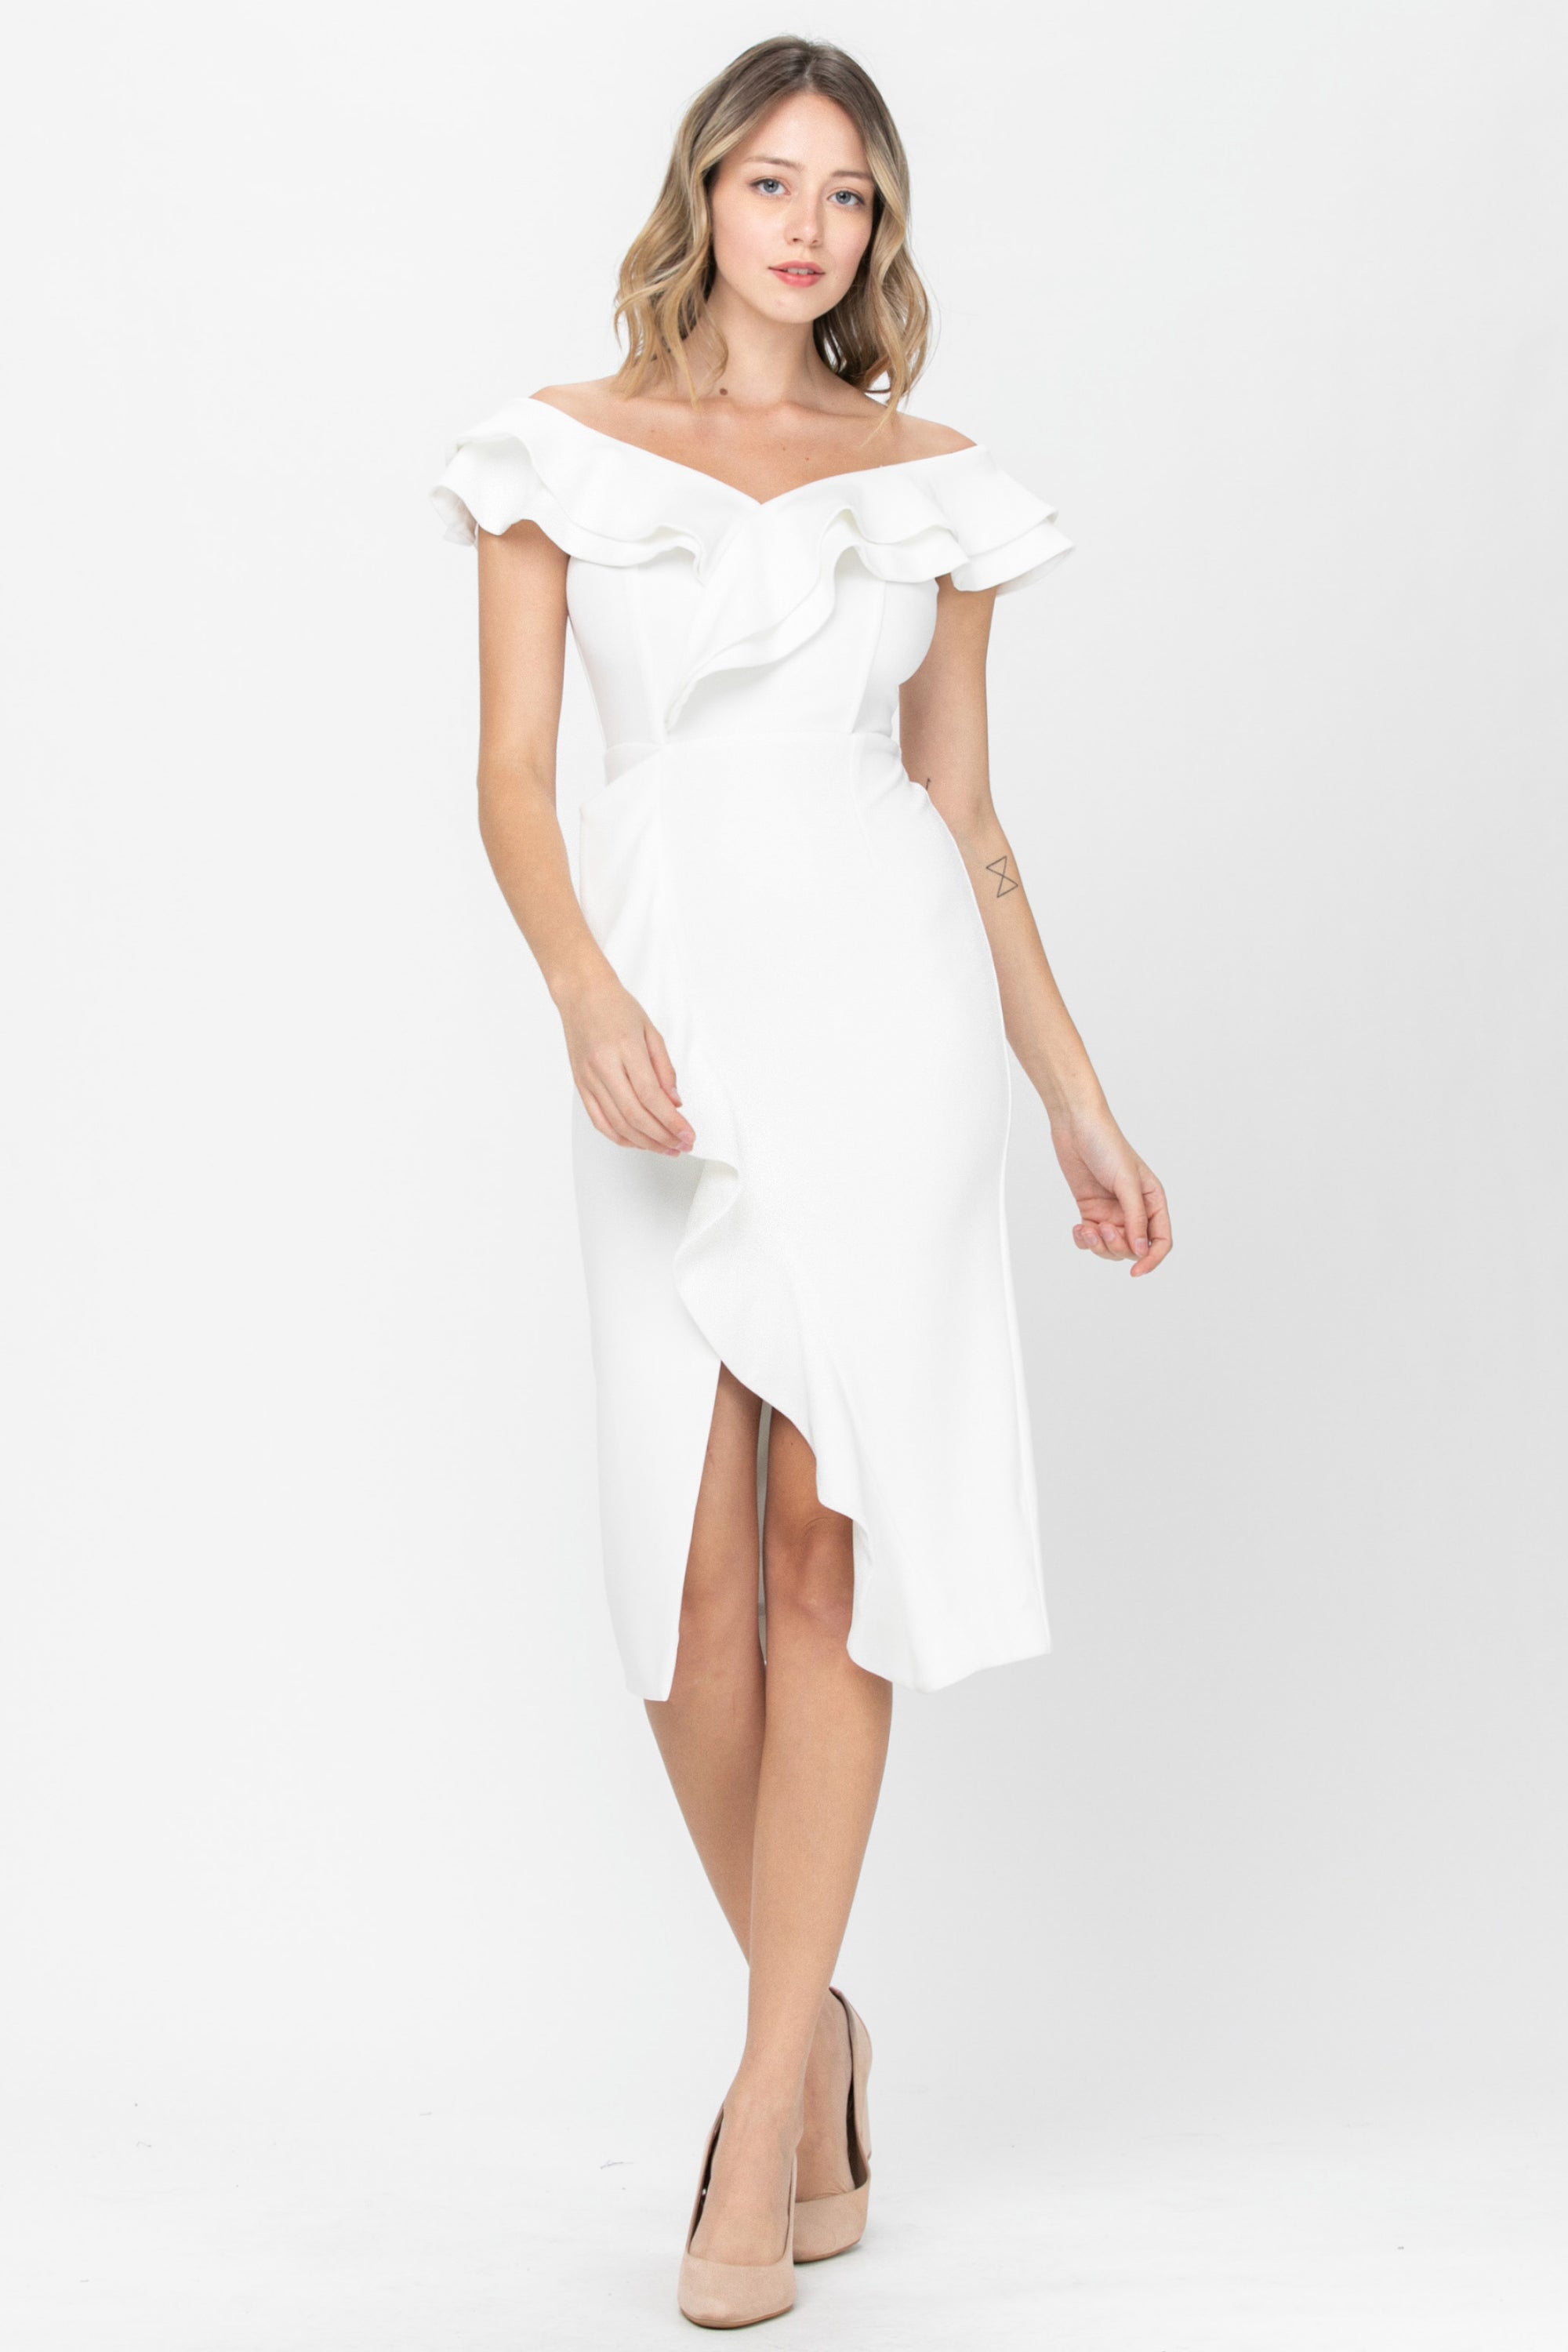 Kelsey | An Elegant White Midi Dress ...